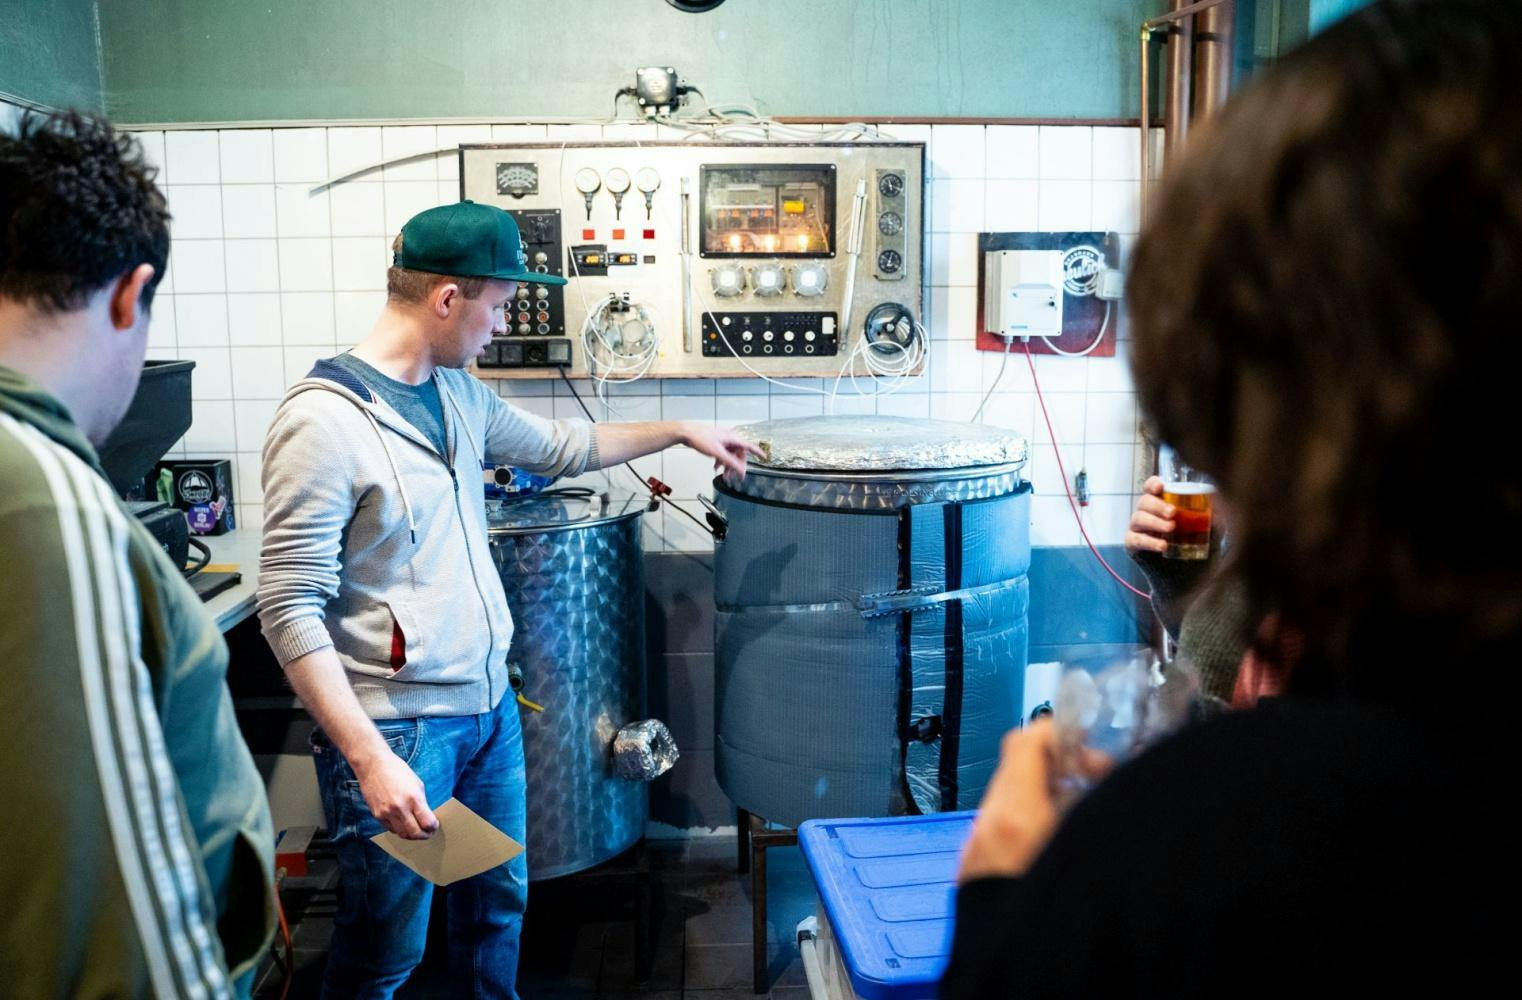 Bier-Wanderung | Einblicke in zwei Brauereien mit Verkostung